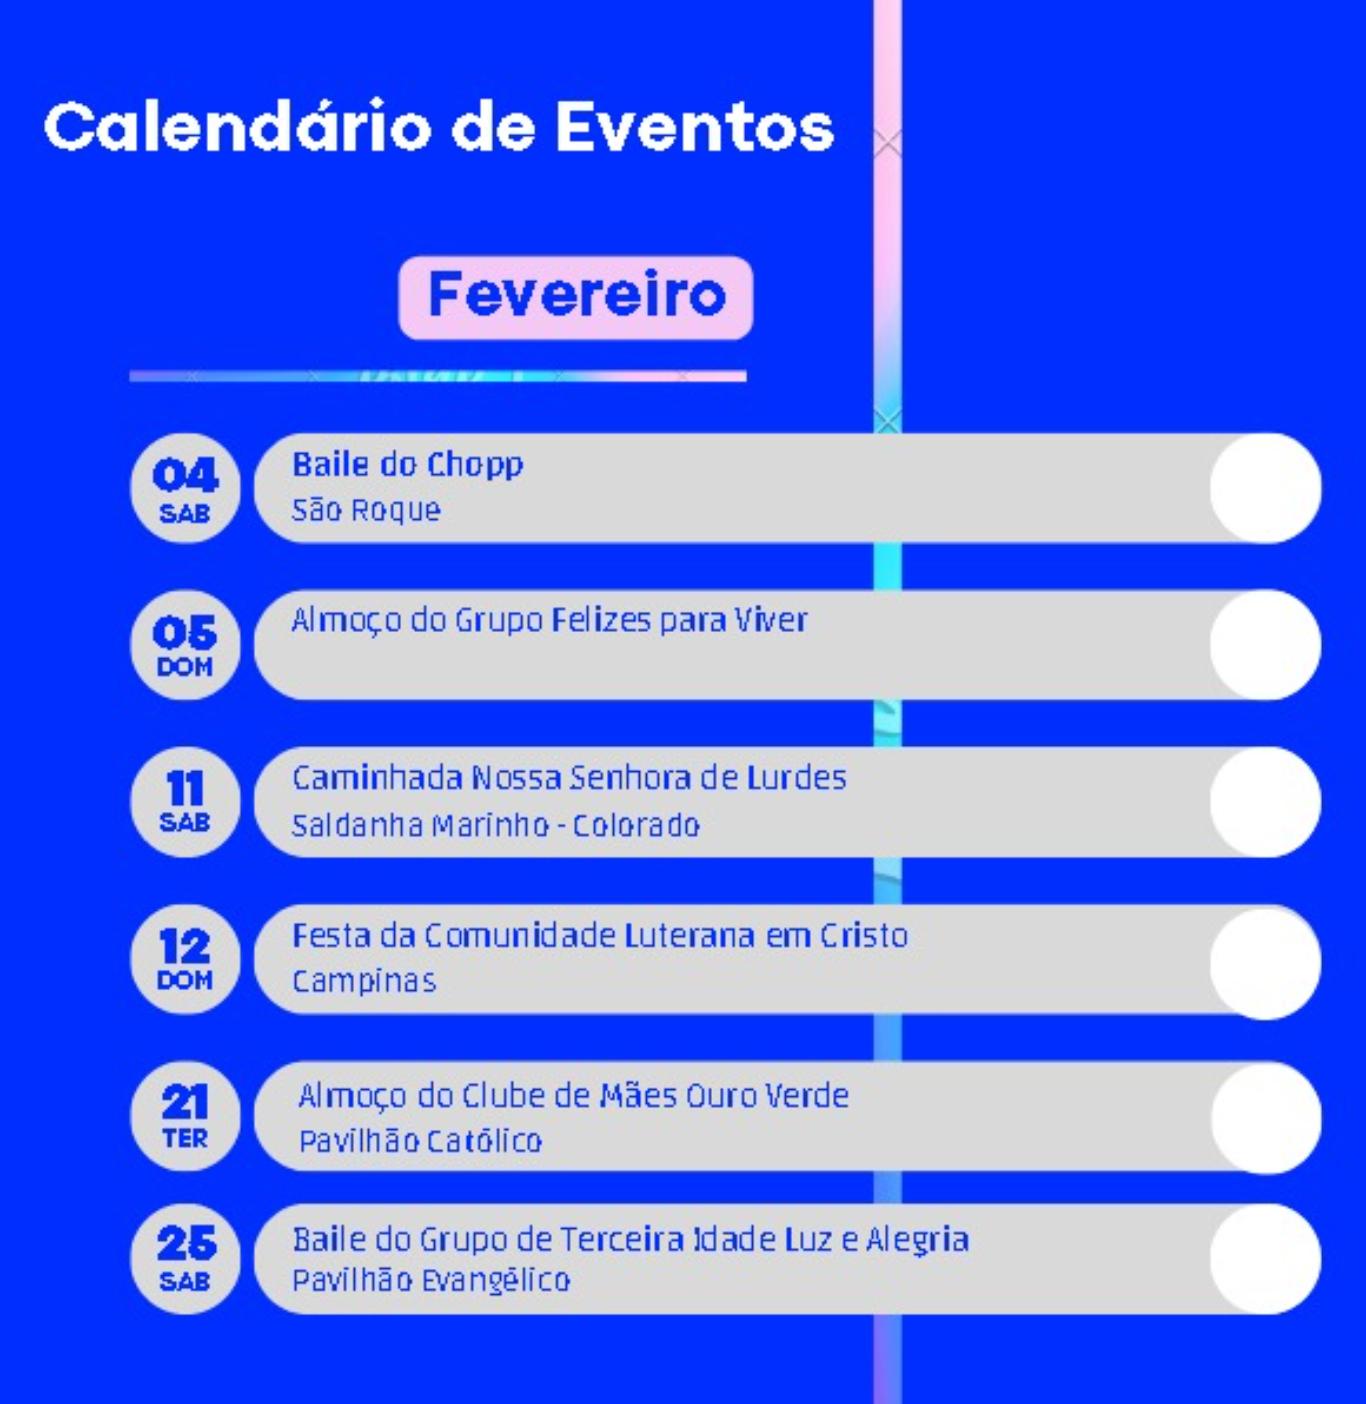 CALENDÁRIO DE EVENTOS DE FEVEREIRO